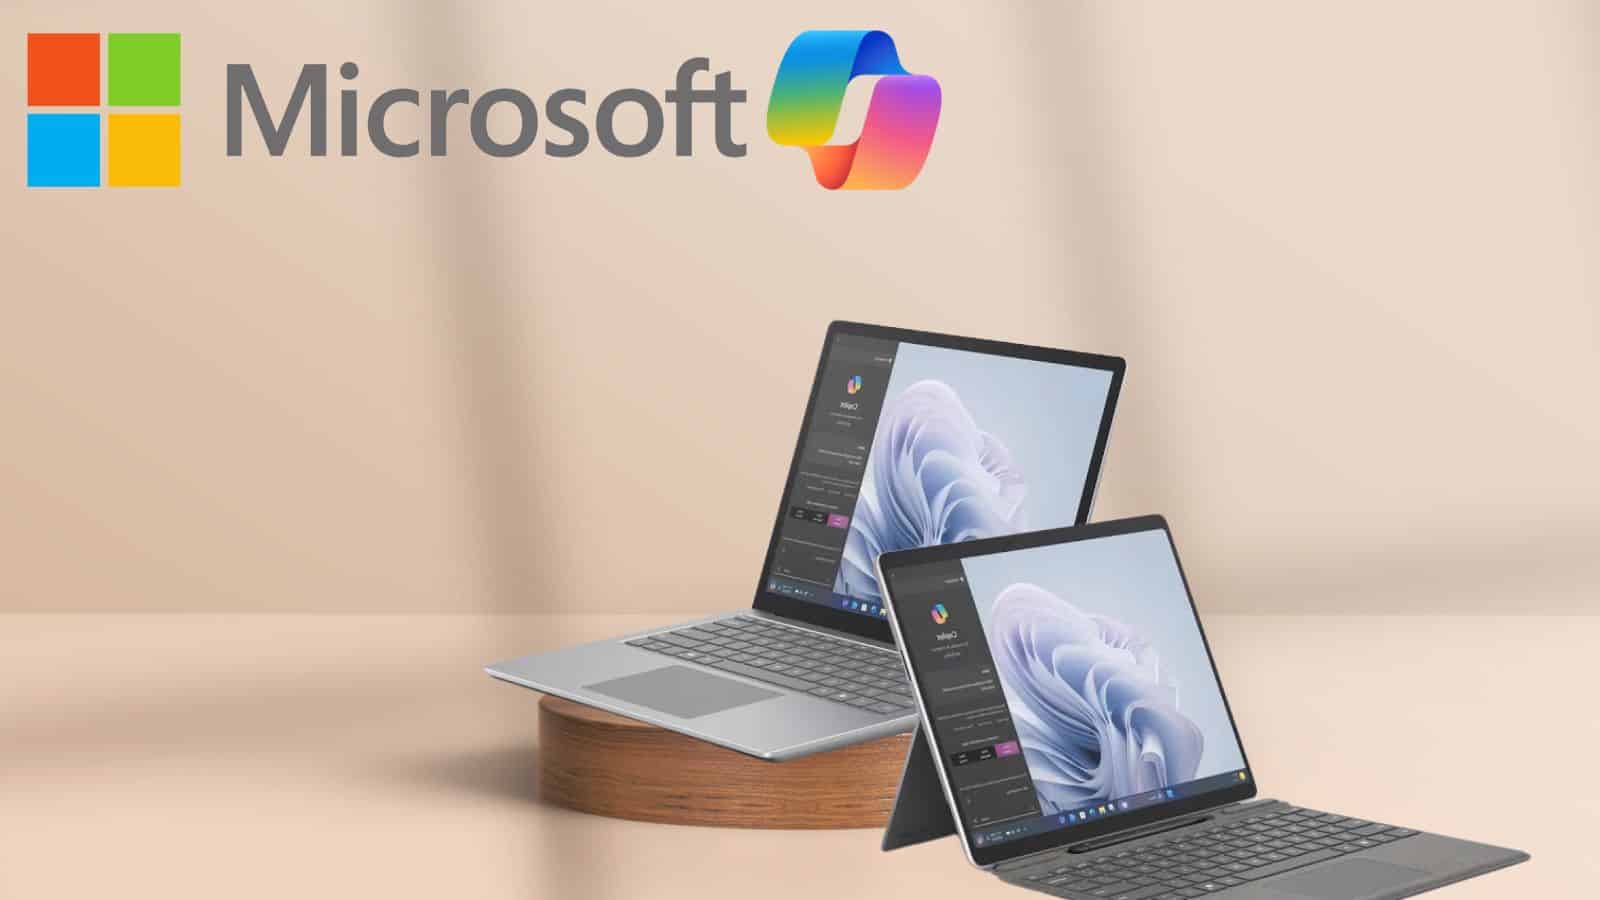 Microsoft: i Surface Pro10 e Laptop6 non sono acquistabili da tutti